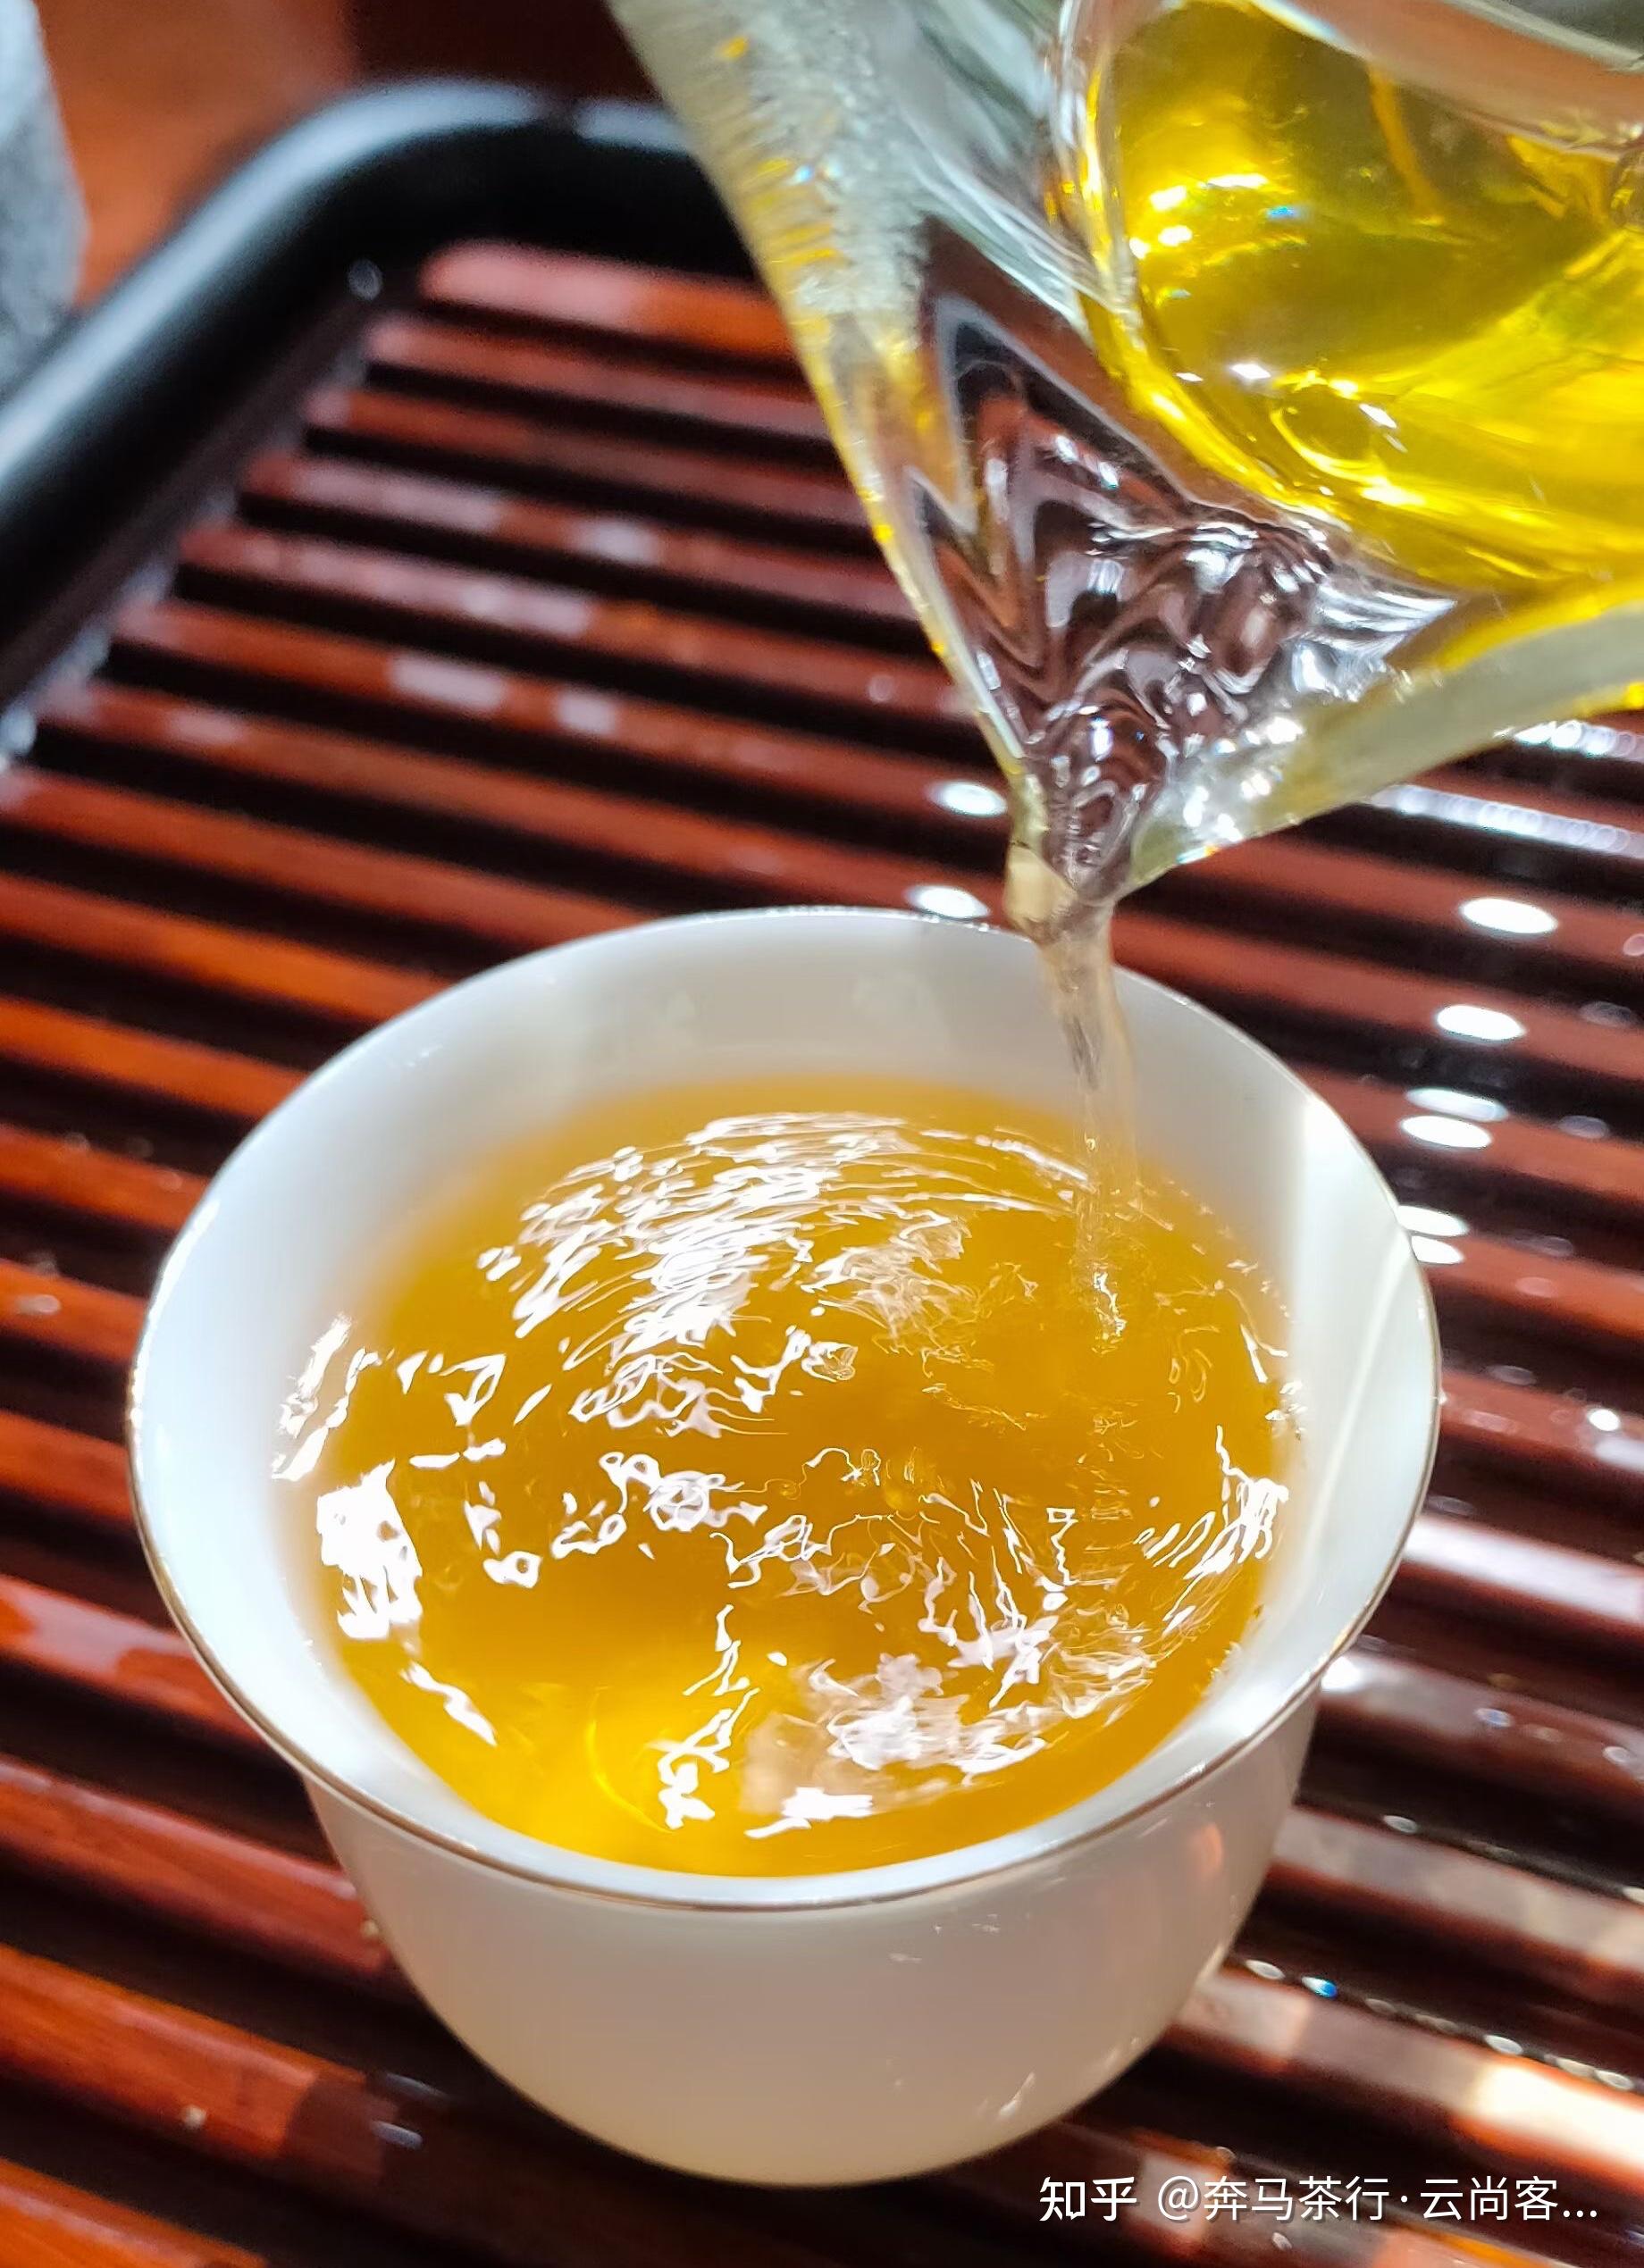 古树普洱茶——生茶黄绿熟茶红褐缘于制作工艺不同 